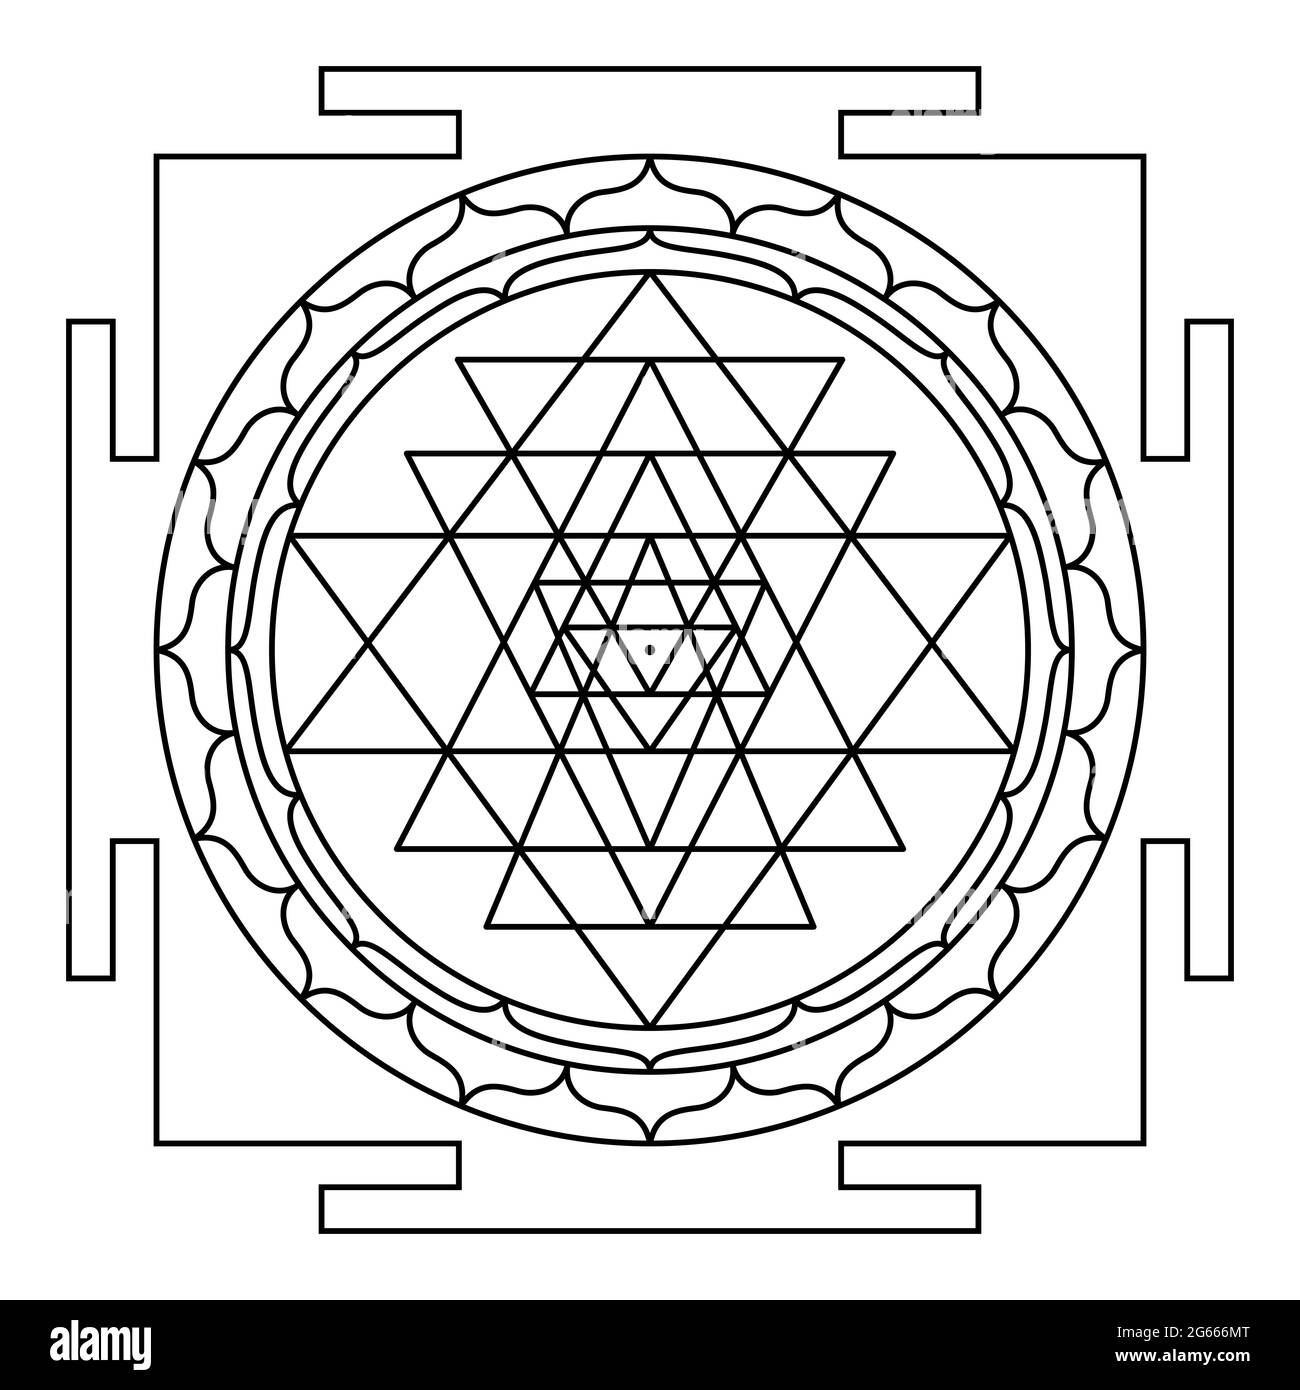 Sri Yantra, Shri Yantra oder Shri Chakra, ein mystisches Hindu-Diagramm. Neun ineinander verschränkende Dreiecke umgeben Bindu, einen zentralen Punkt und das kosmische Zentrum. Stockfoto